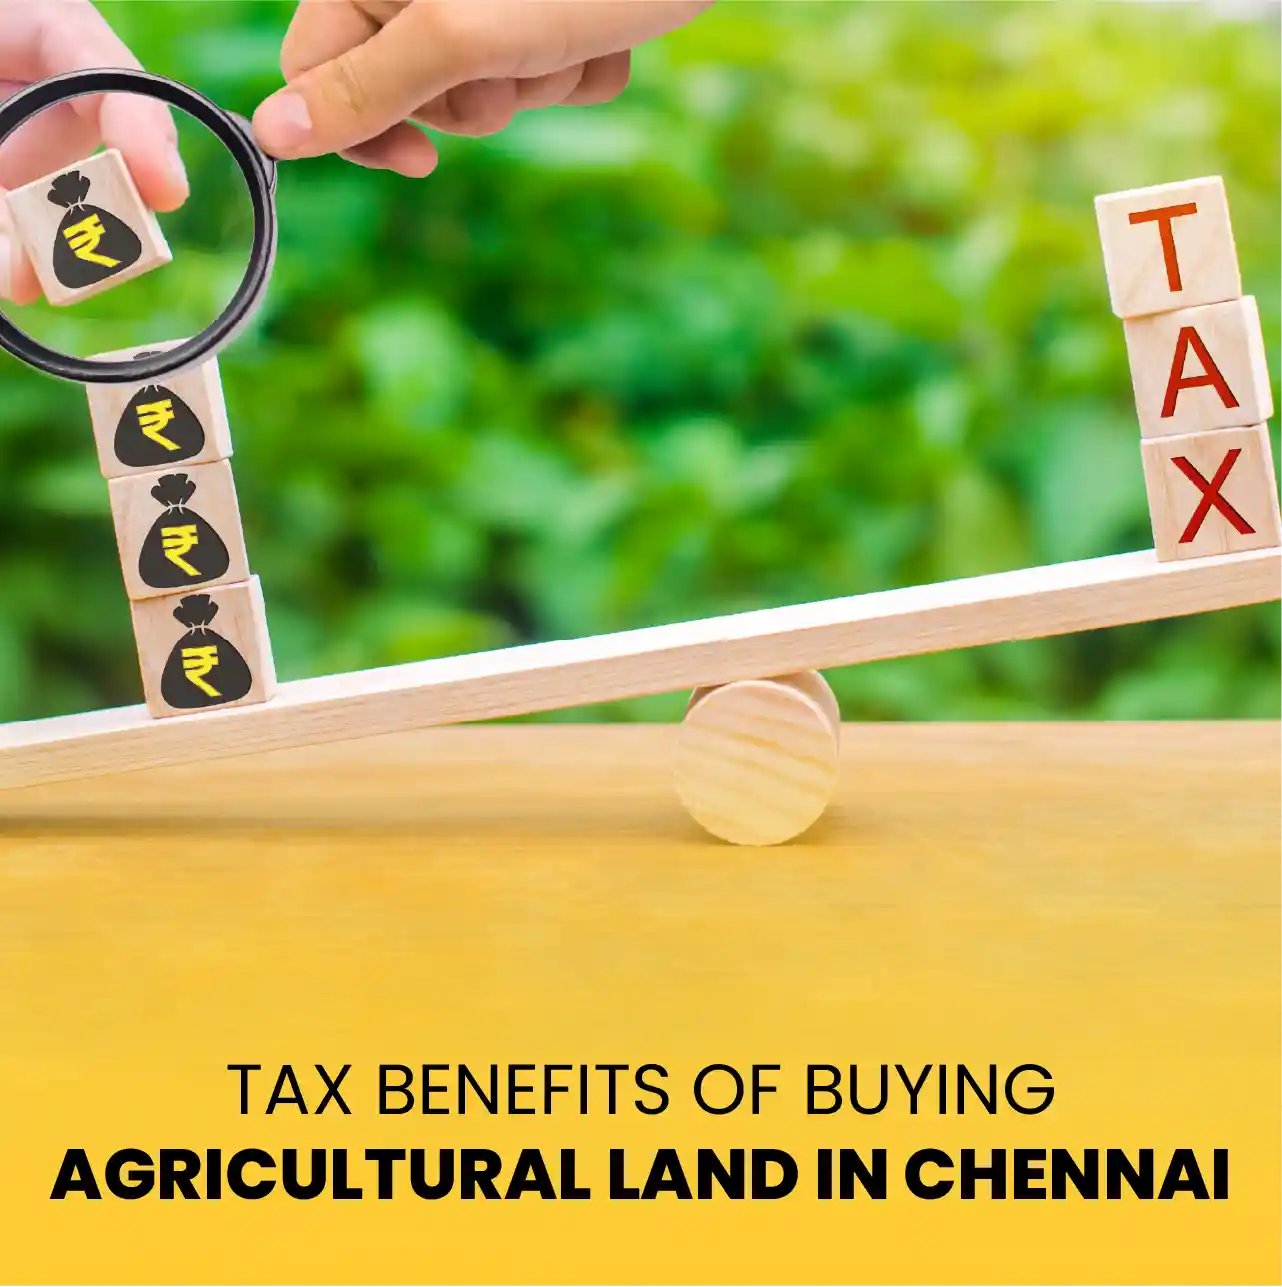 Farmland for Sale in Chennai